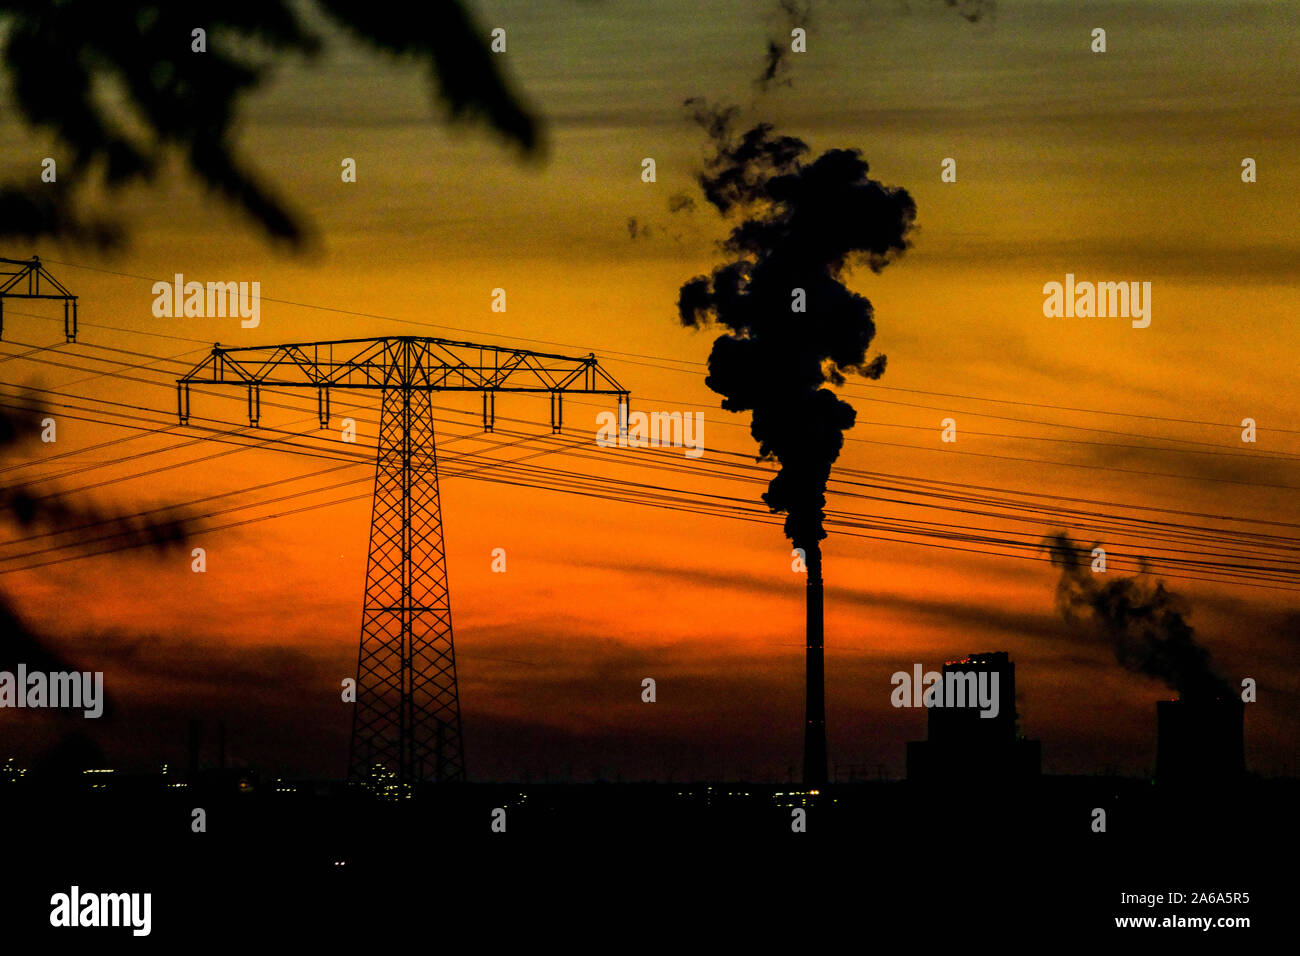 Réchauffement climatique, lignes électriques, fumée de cheminée au coucher du soleil Allemagne industrie changement climatique carbone changement climatique émissions de co2 énergie montée fumée scène Banque D'Images